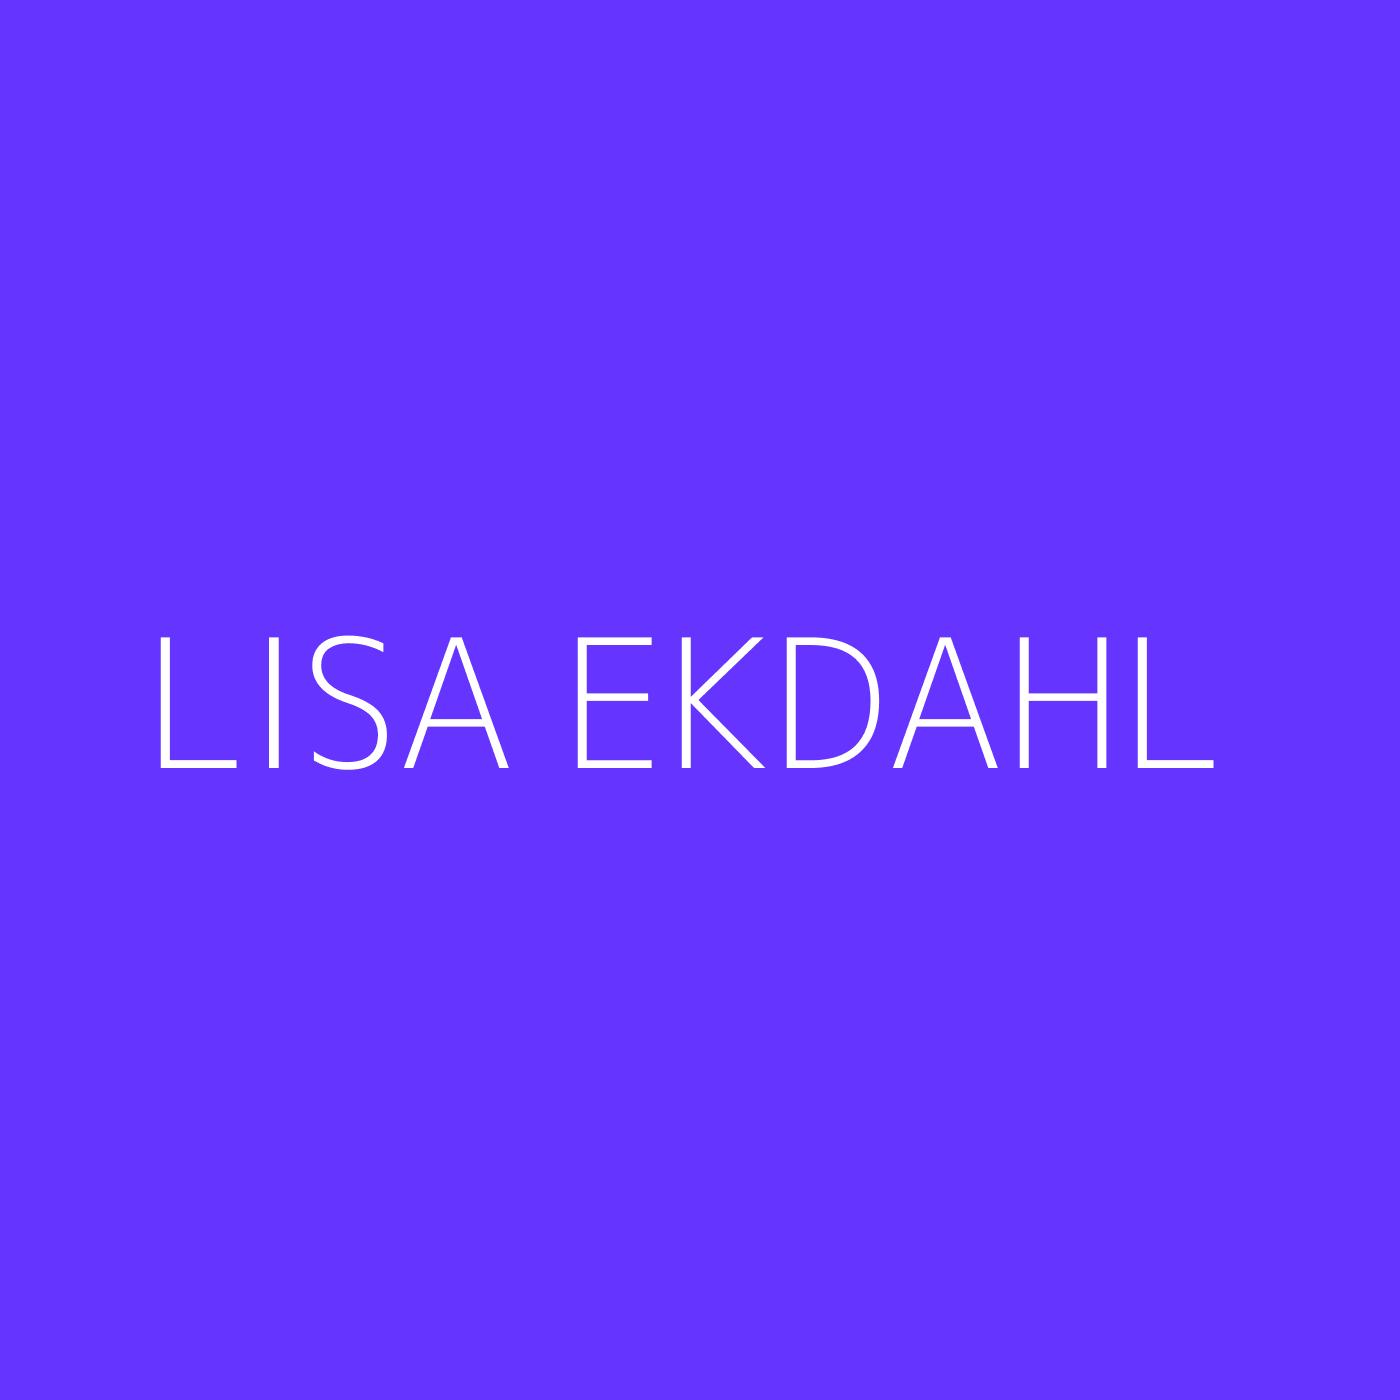 Lisa Ekdahl Playlist Artwork